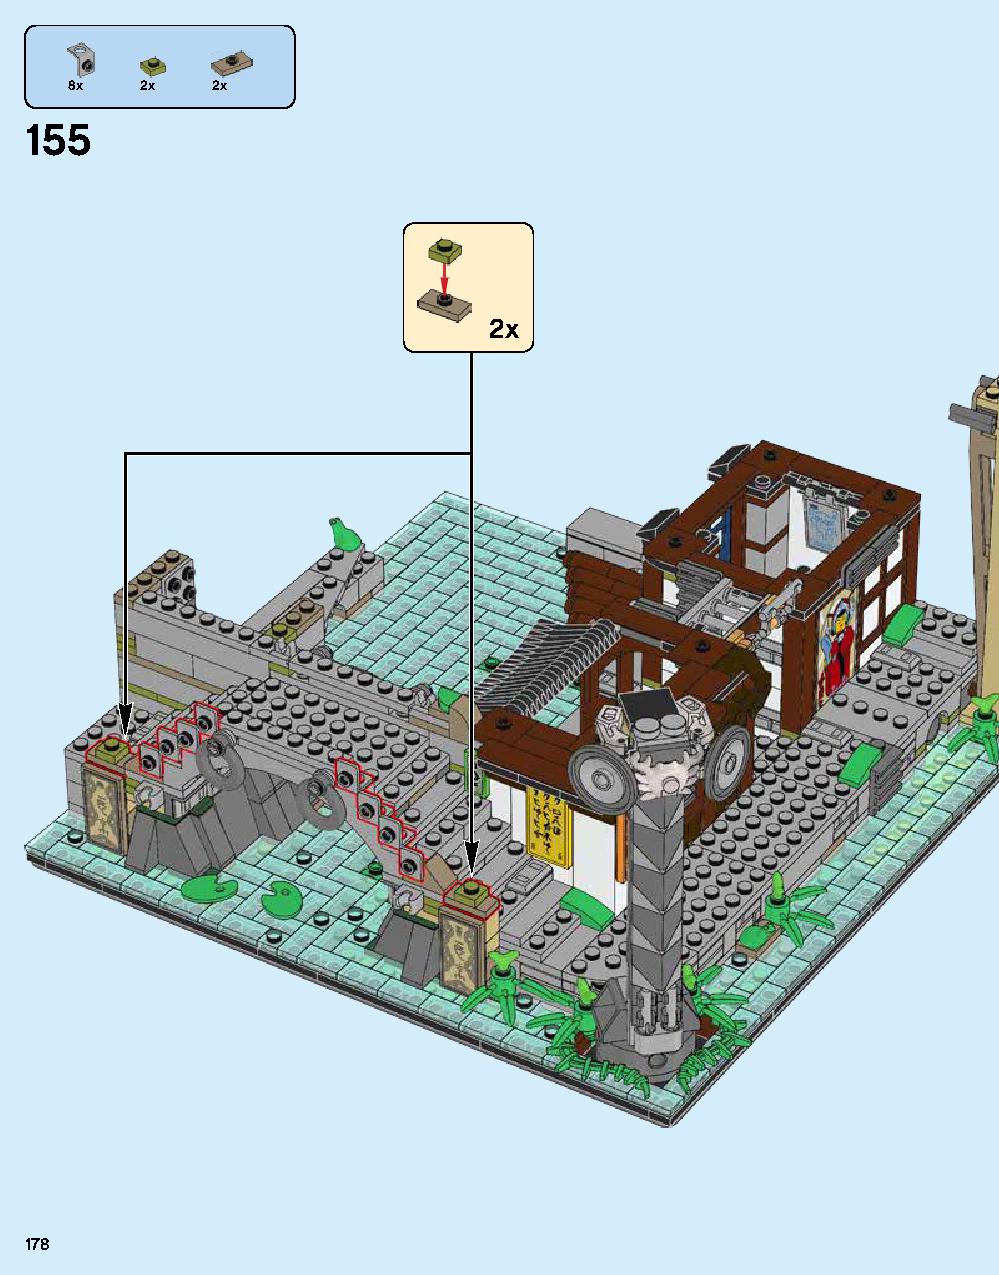 ニンジャゴー シティ 70620 レゴの商品情報 レゴの説明書・組立方法 178 page